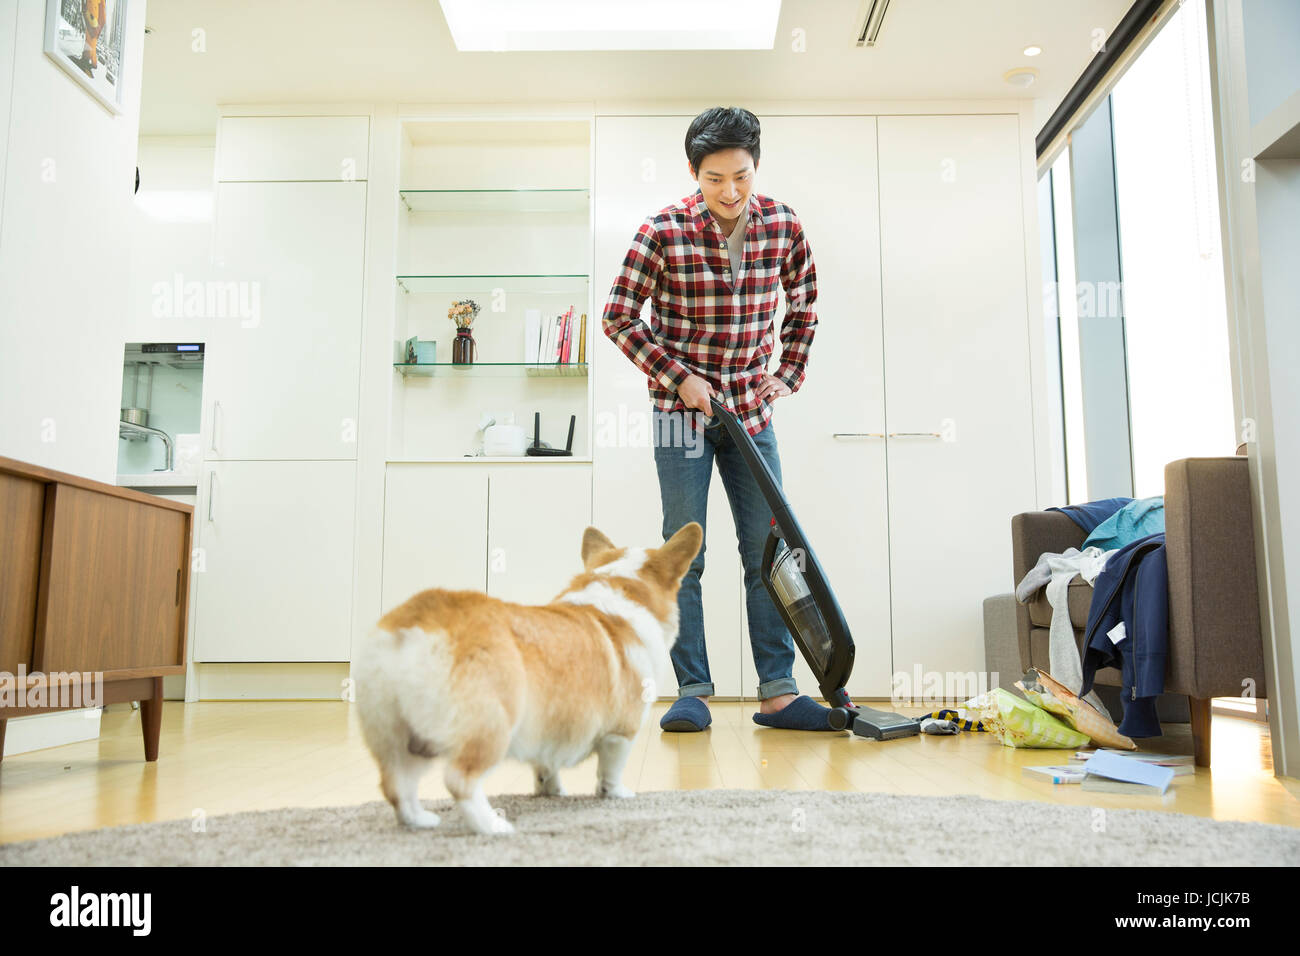 Junge Bachelor mit einem Haustier Hund sein Haus Reinigung Stockfoto